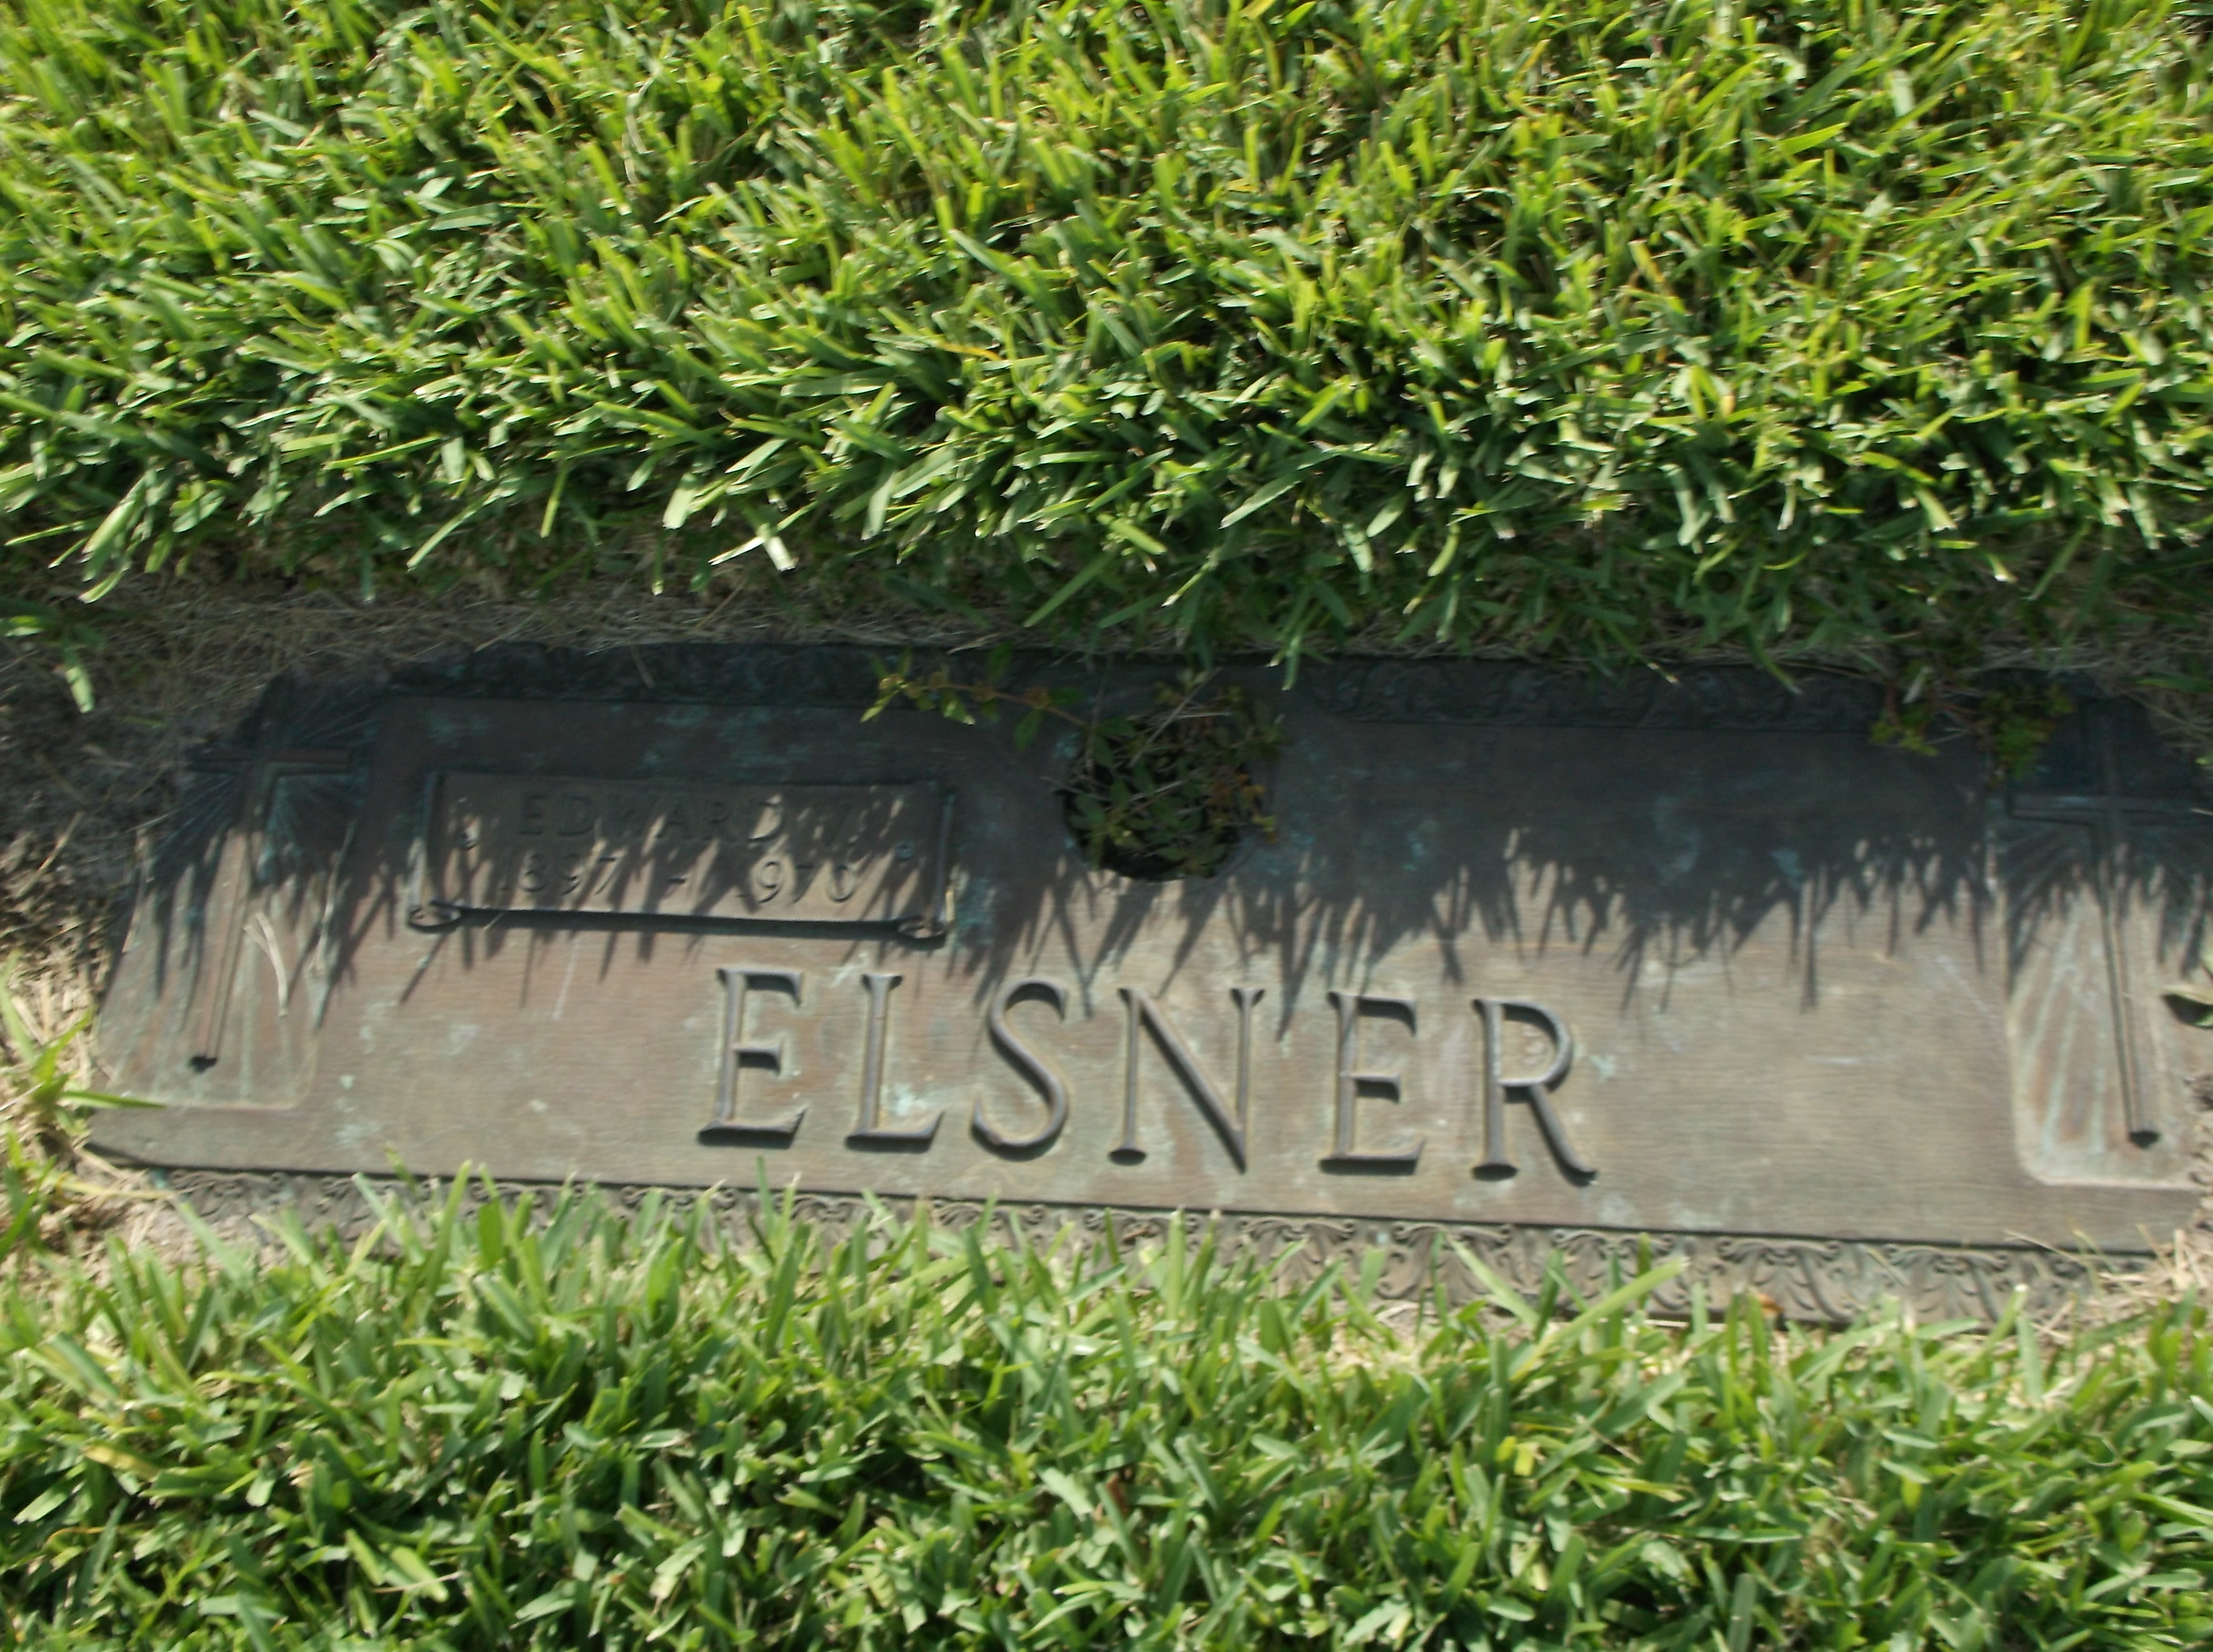 Edward V Elsner